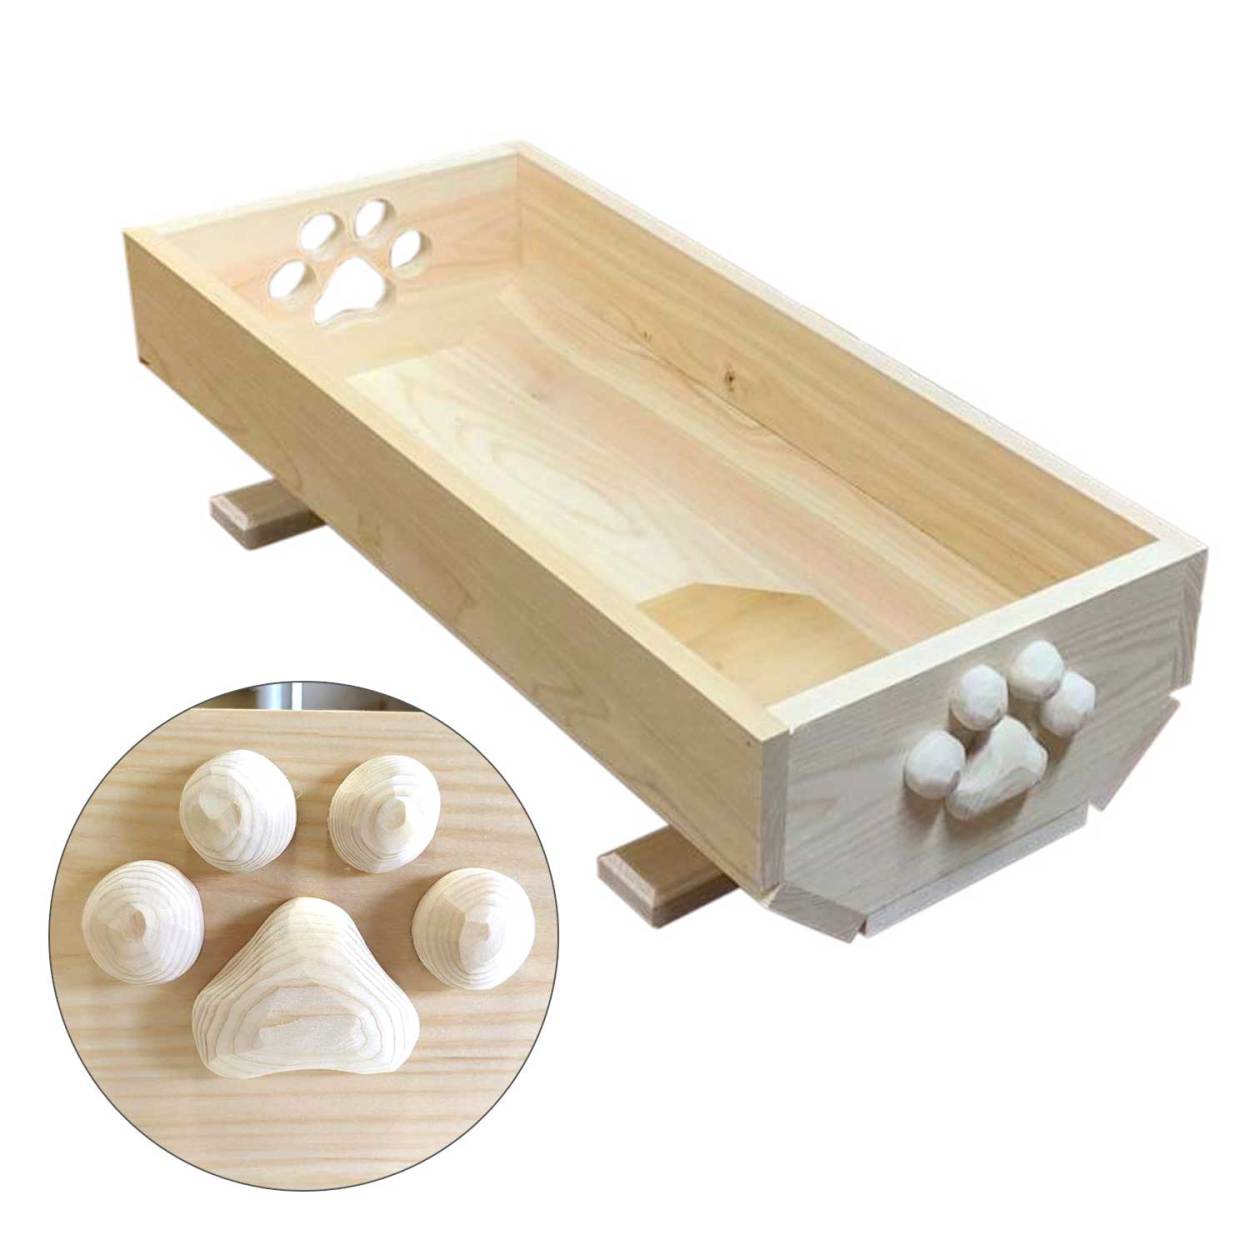 猫のベッド 夏用 肉球 おしゃれ 奈良吉野桧 猫プランター かわいい肉球付き (小) 木製  エコ やさしい